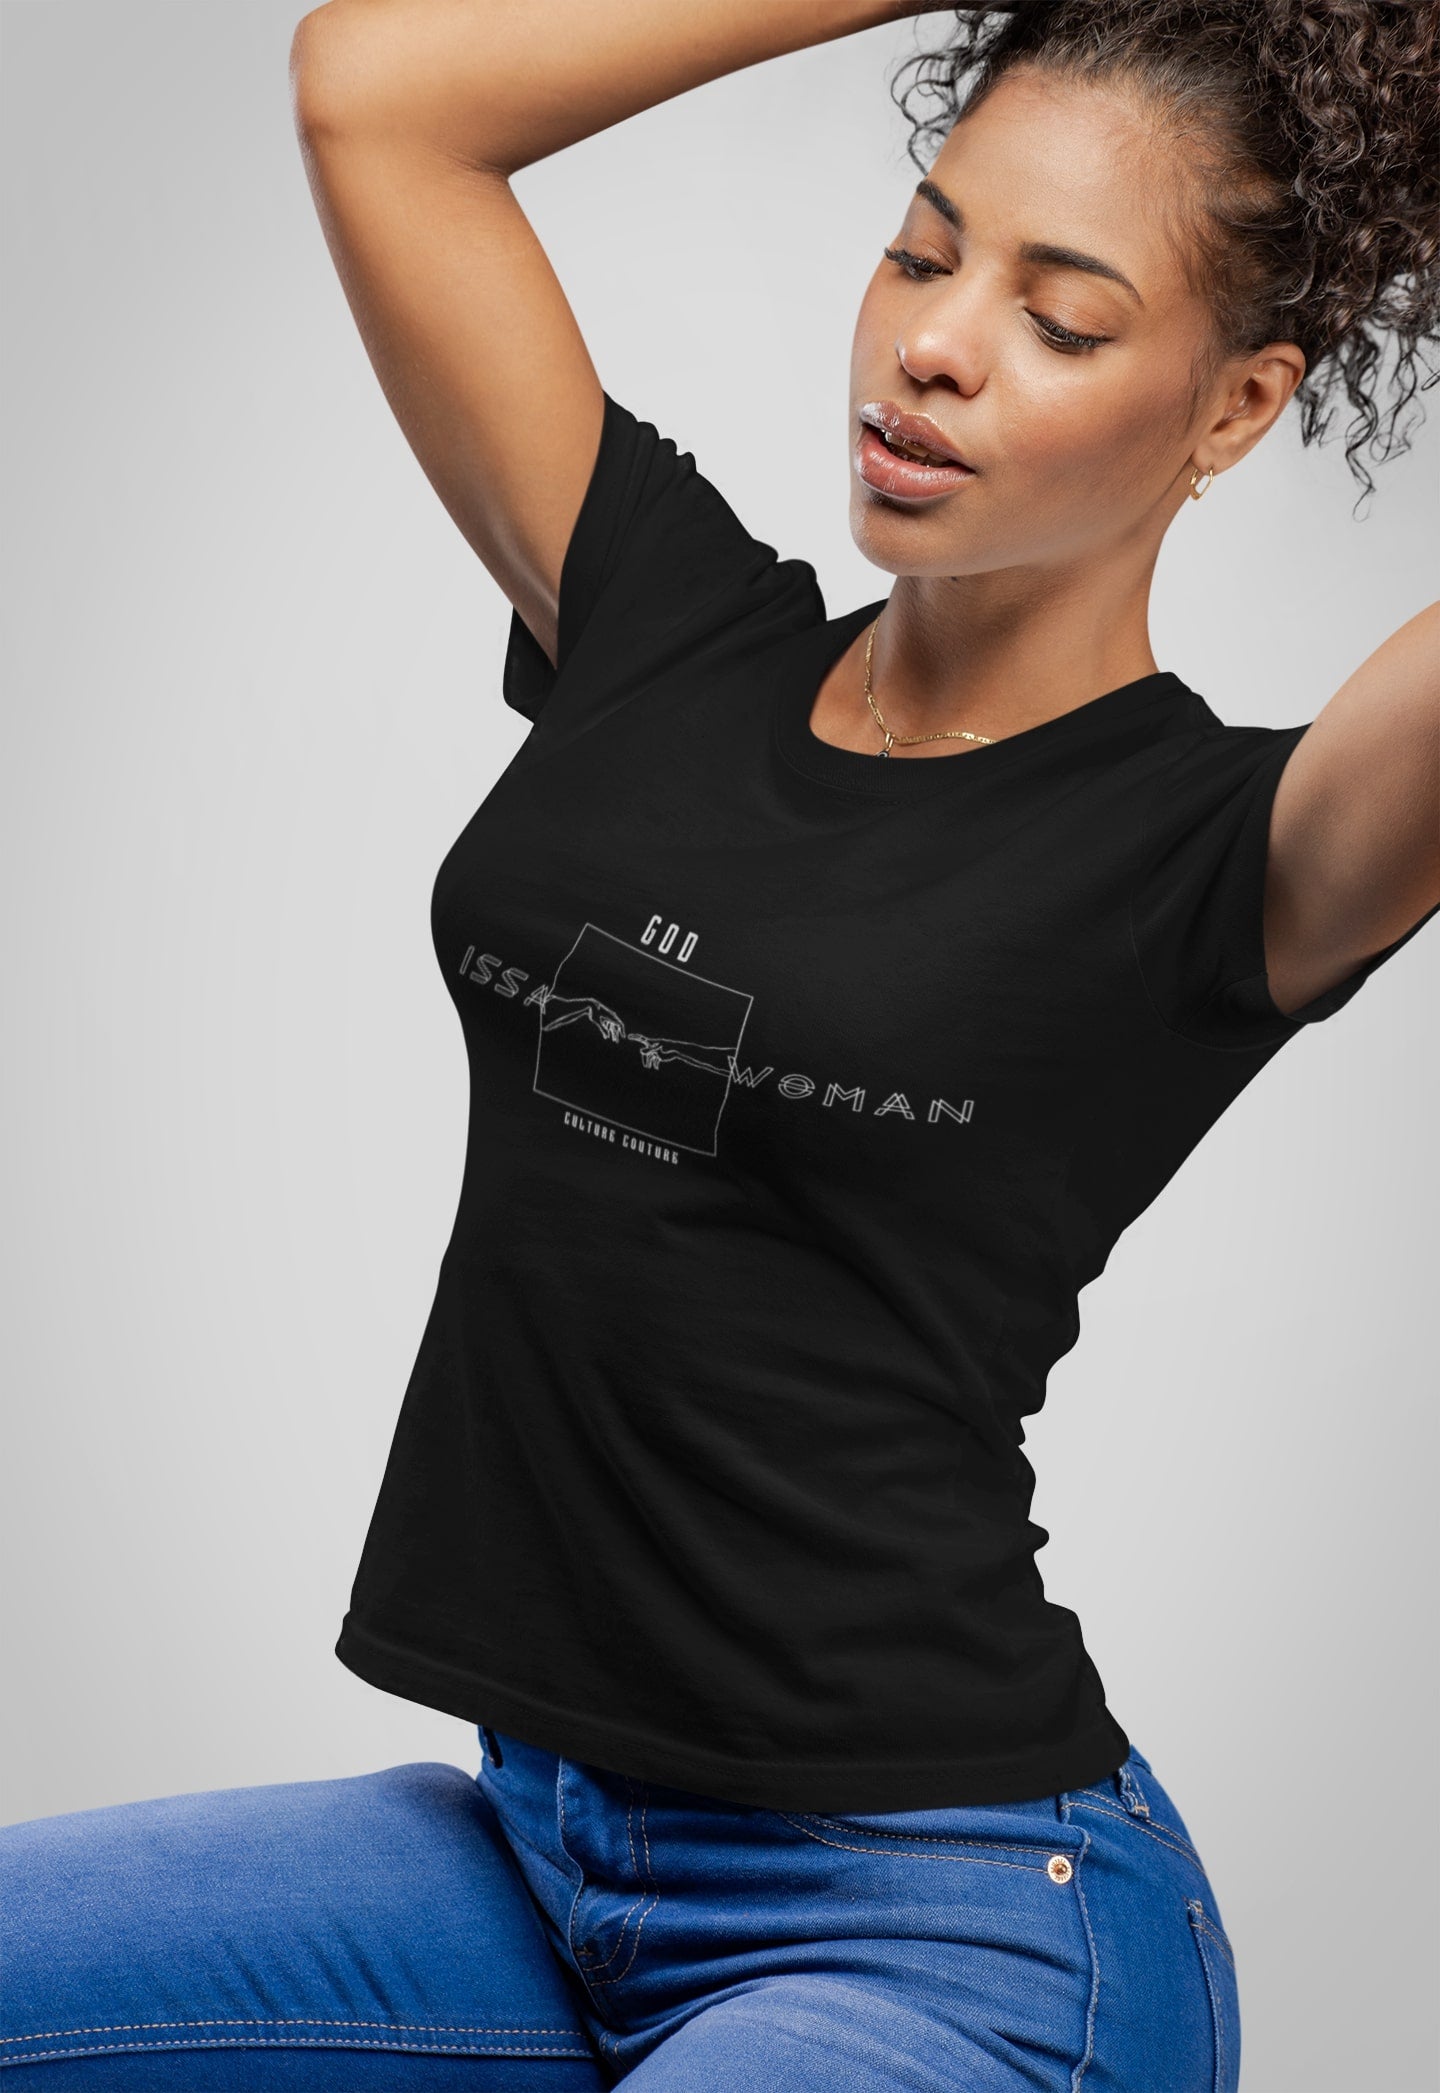 God Issa Woman T-Shirt/Black